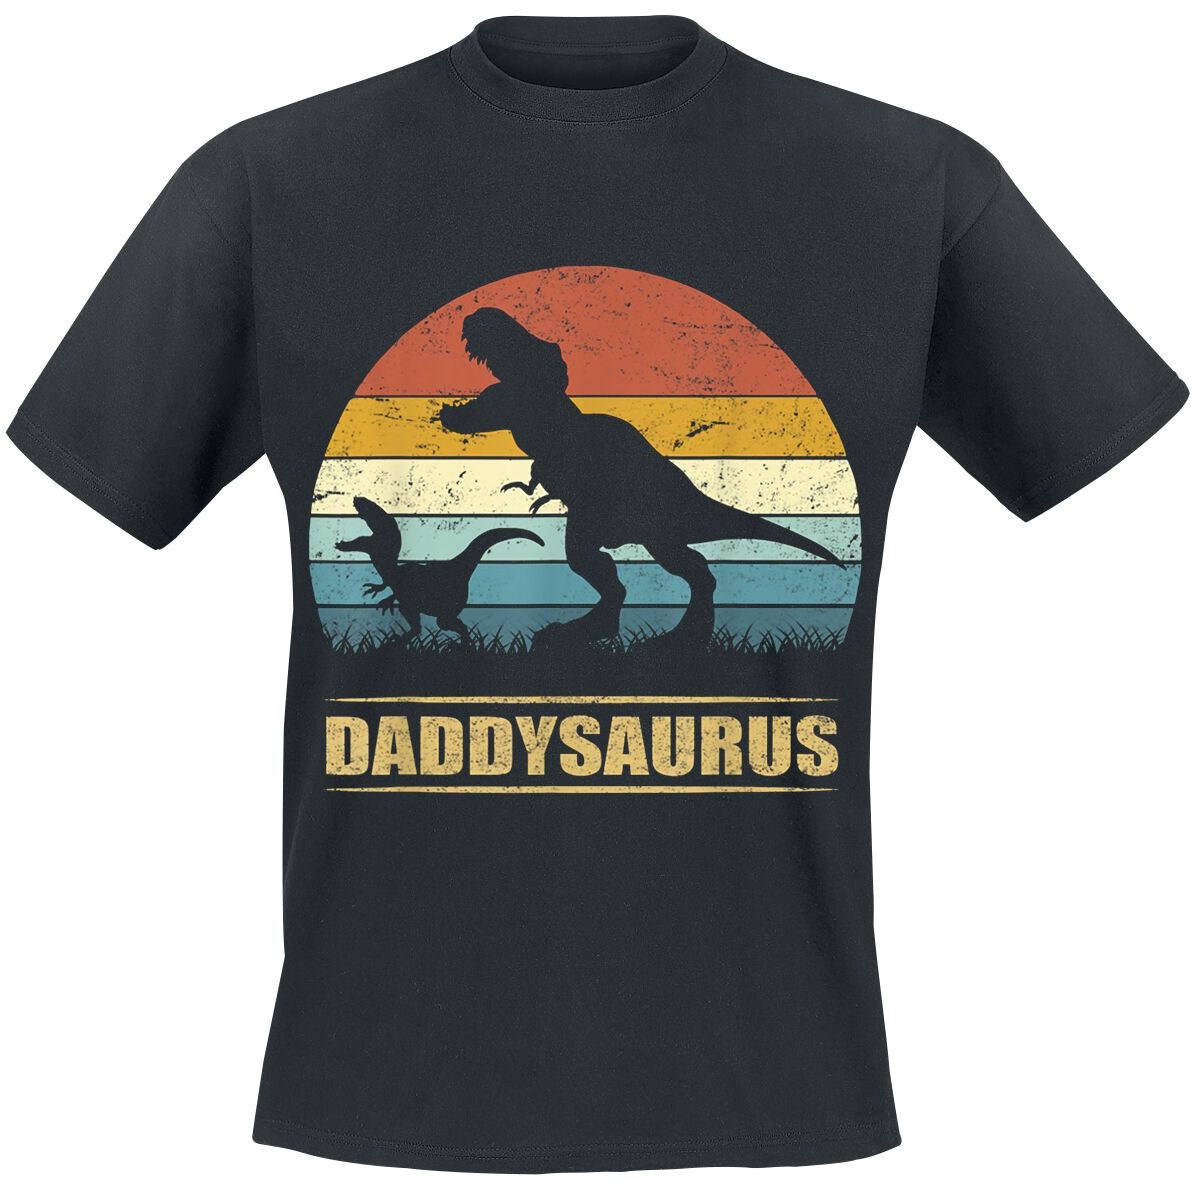 Familie & Freunde T-Shirt - Daddysaurus 3 - S bis 4XL - für Männer - Größe 3XL - schwarz